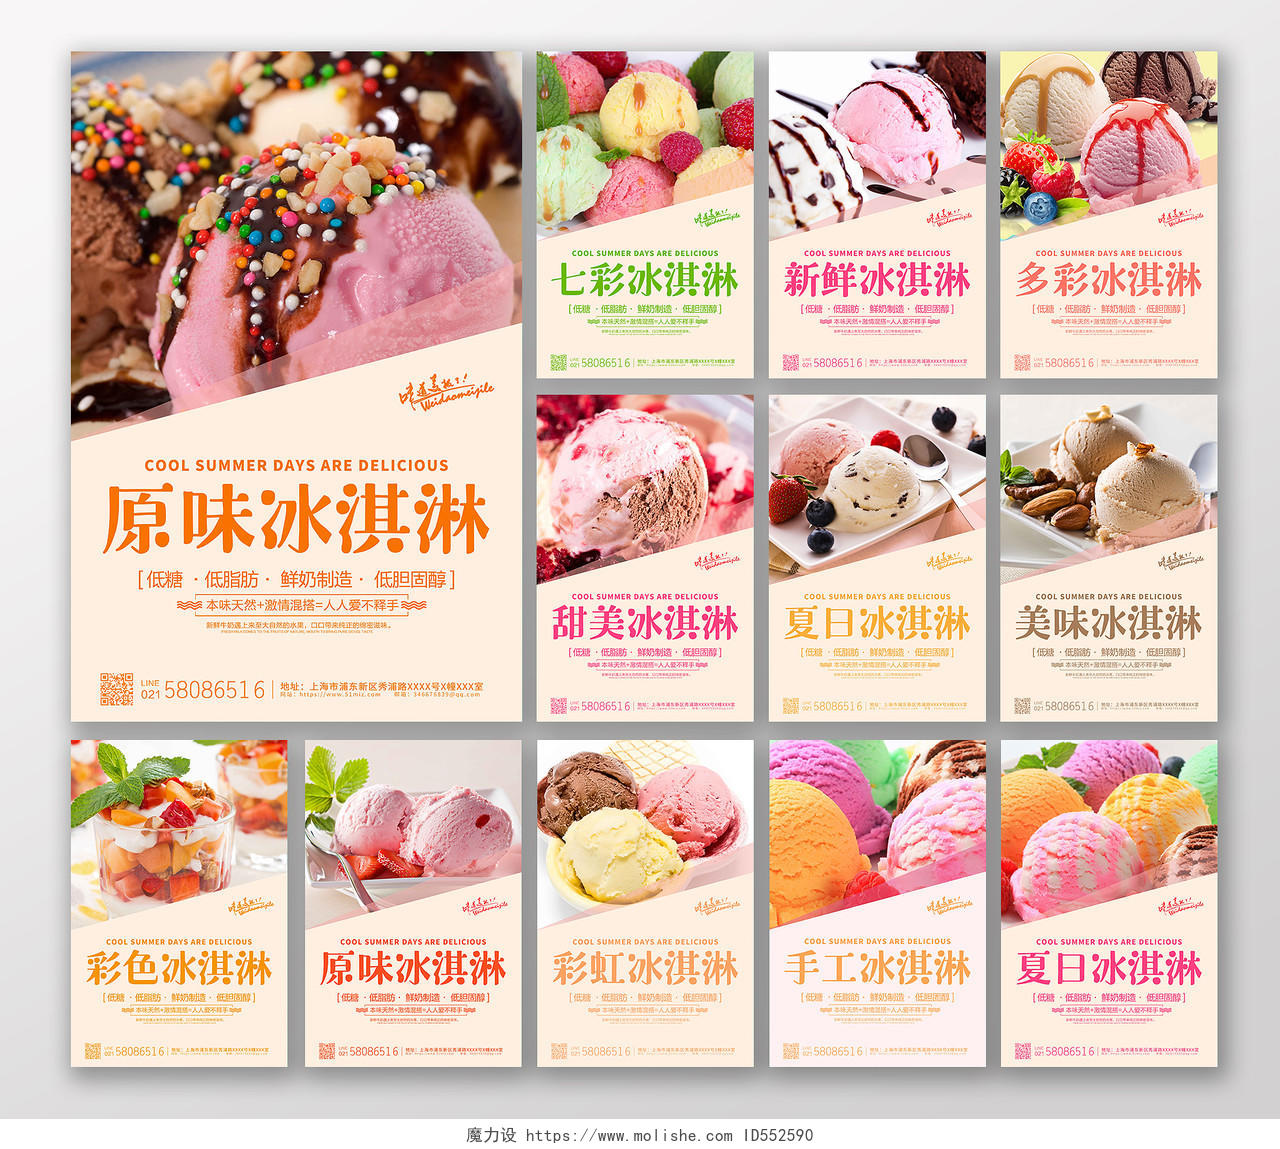 夏天甜品冰淇淋雪糕夏日冰激凌冷饮酷爽夏天12张套图夏天冰淇淋雪糕